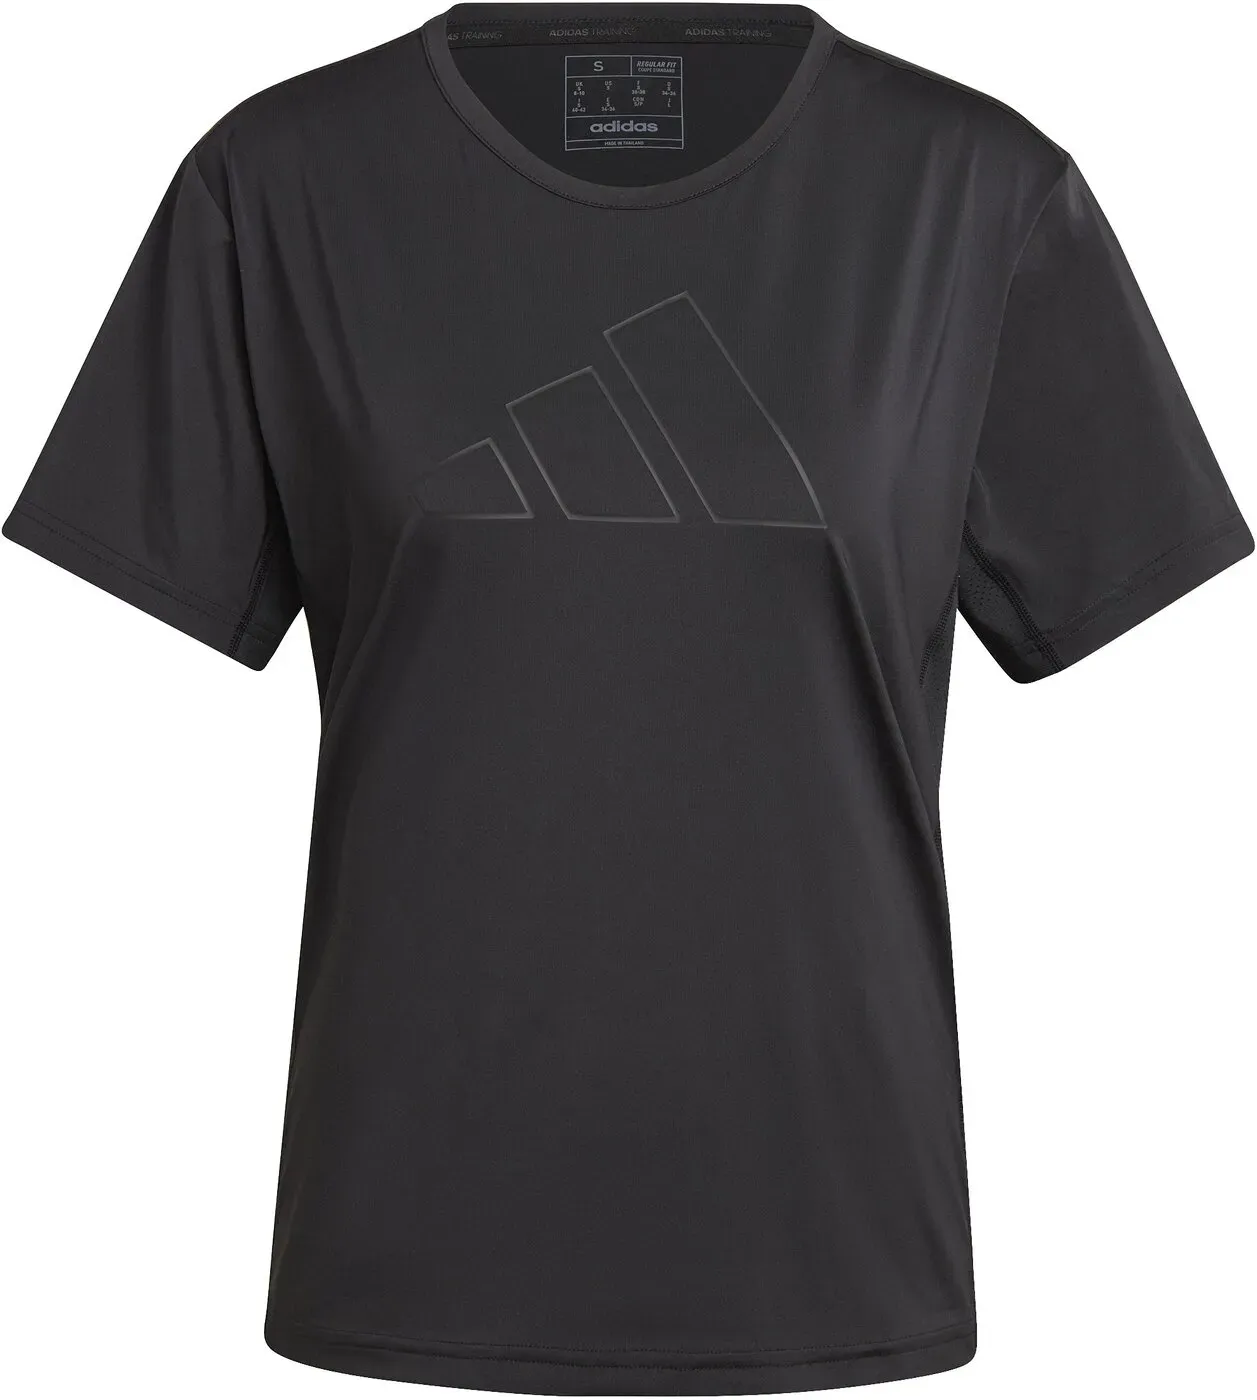 adidas SHIRT TRAINING BIG LOGO Damen Trainings- T-Shirt schwarz - S